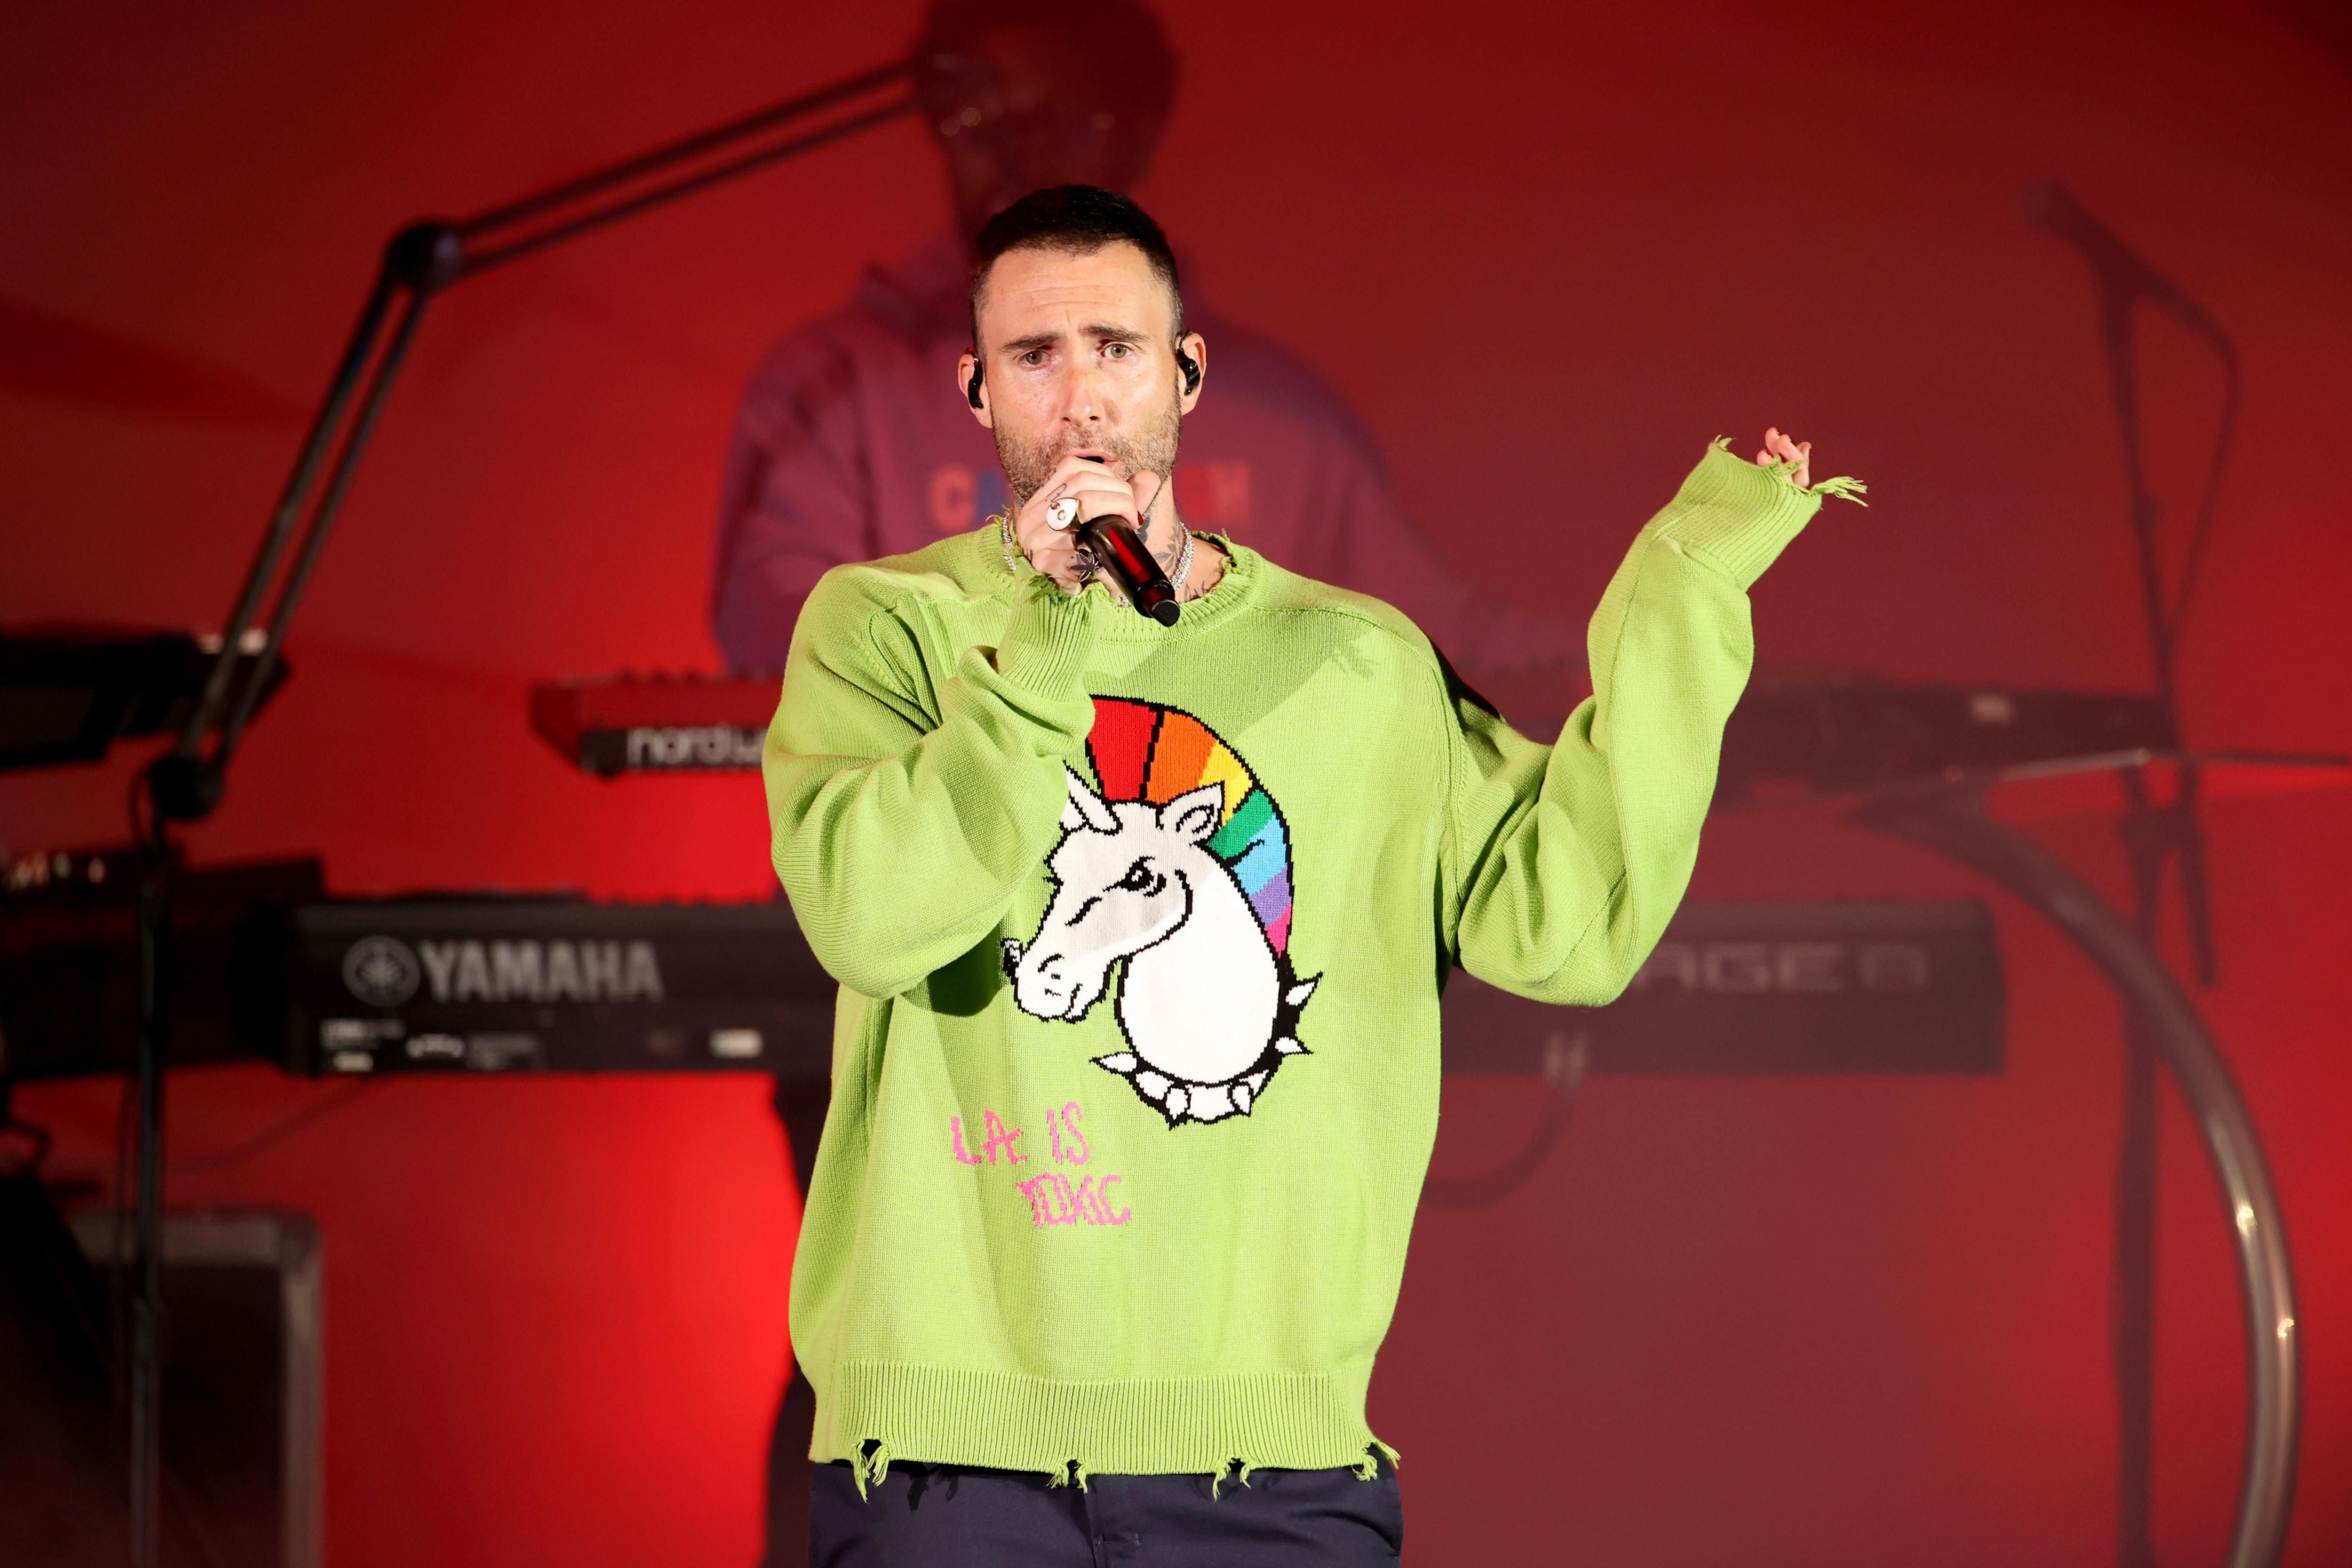 Фанатка бросилась на солиста Maroon 5 во время выступления: курьезная реакция певца - Афиша